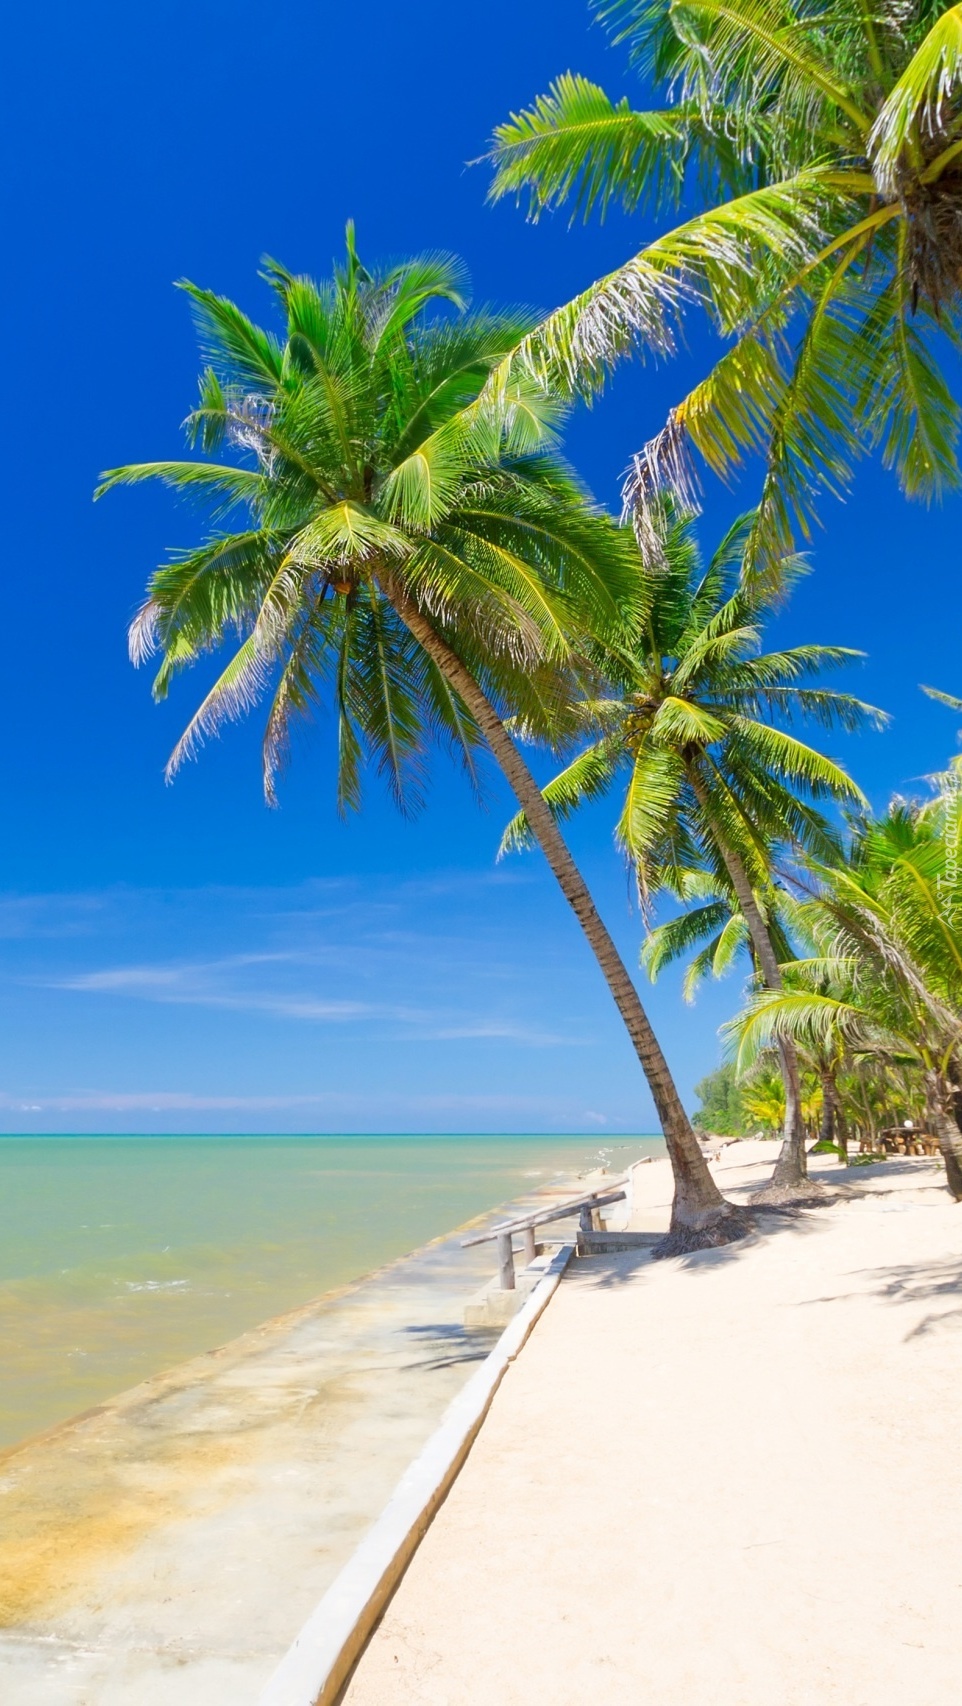 Lato w tropikach pod palmami nad morską plażą